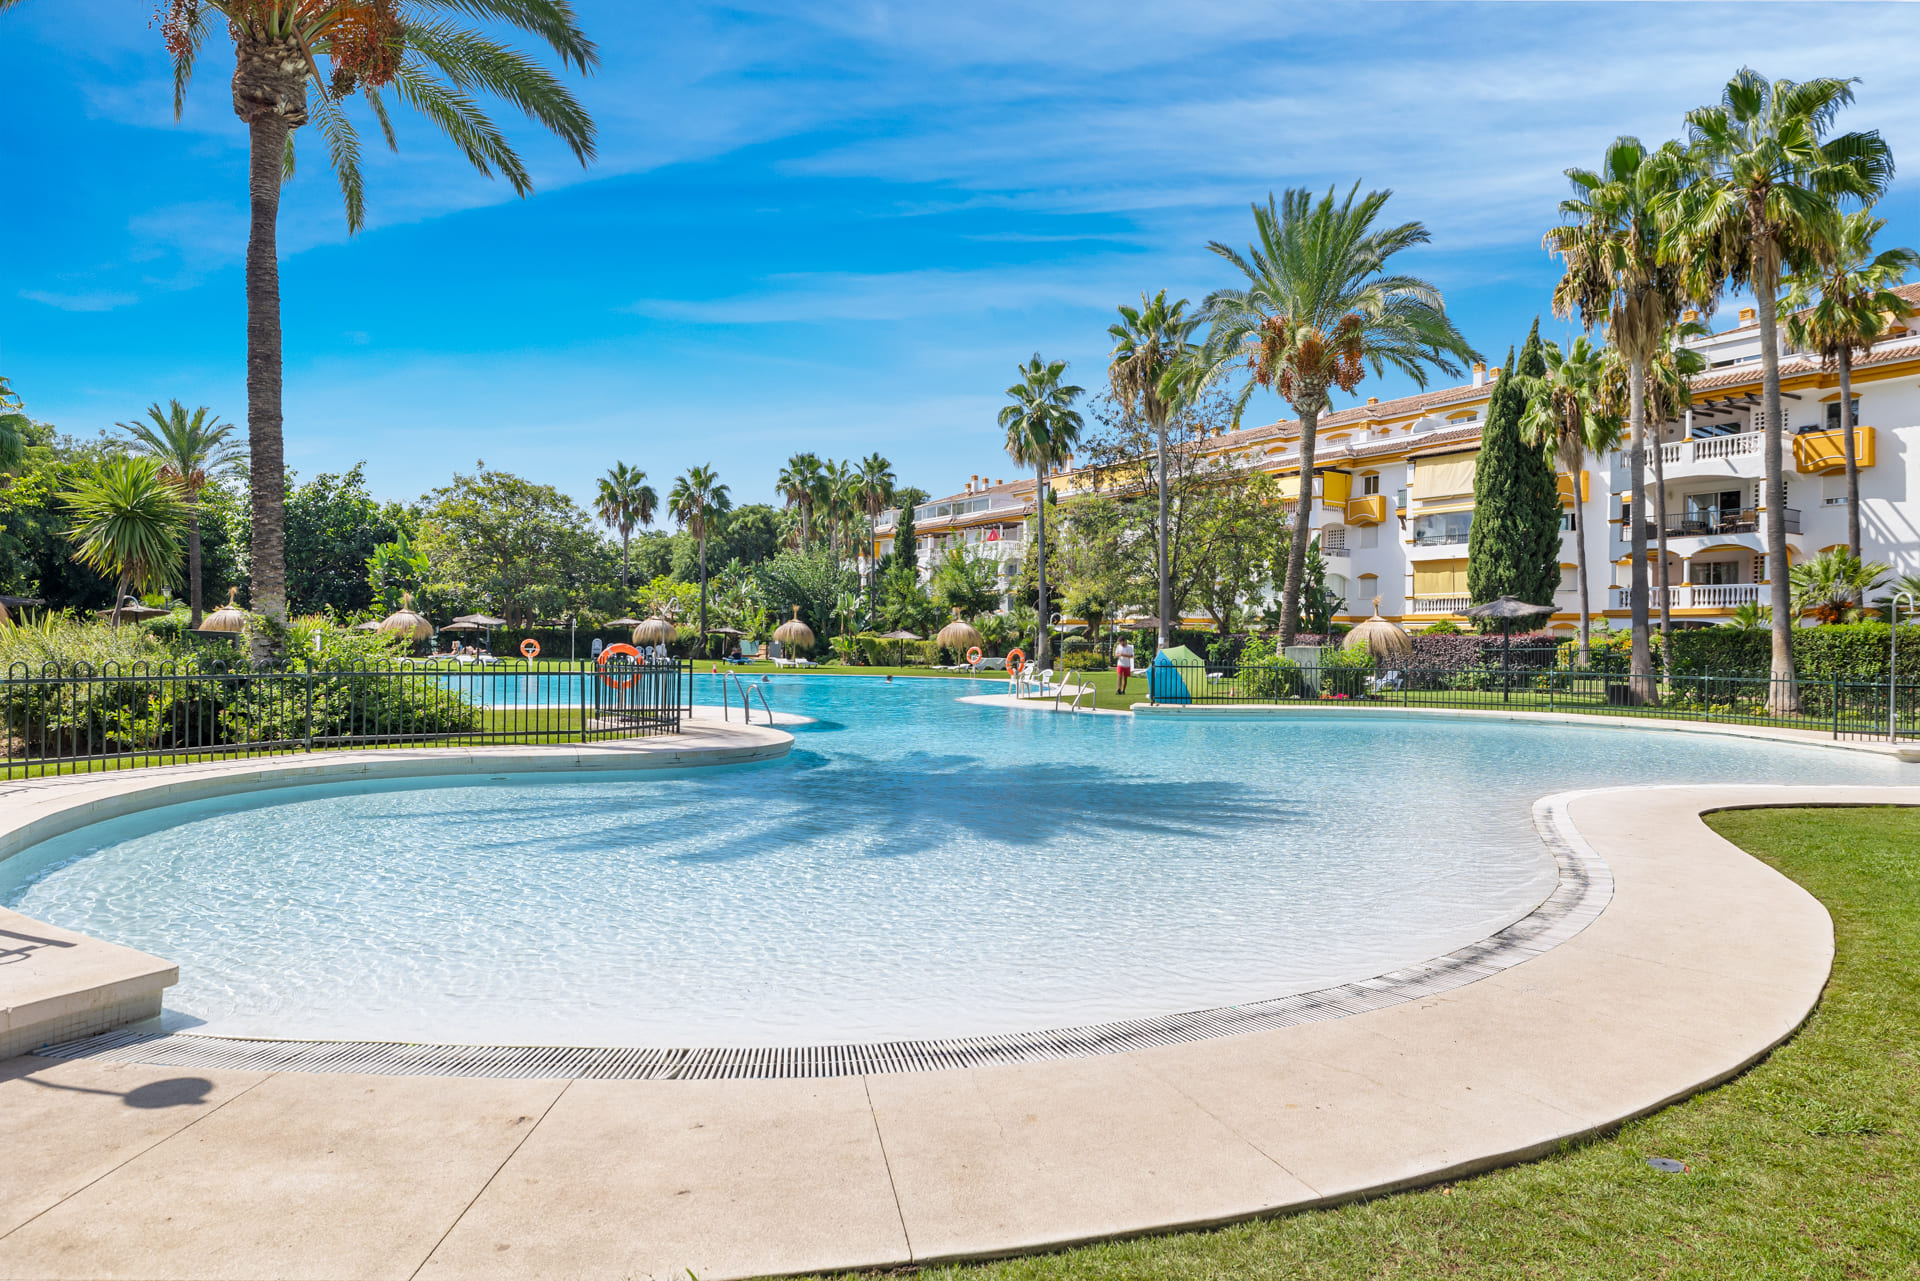 ViVi Real Estate: Spektakulær villa til salg i Marbella med panoramaudsigt over havet.